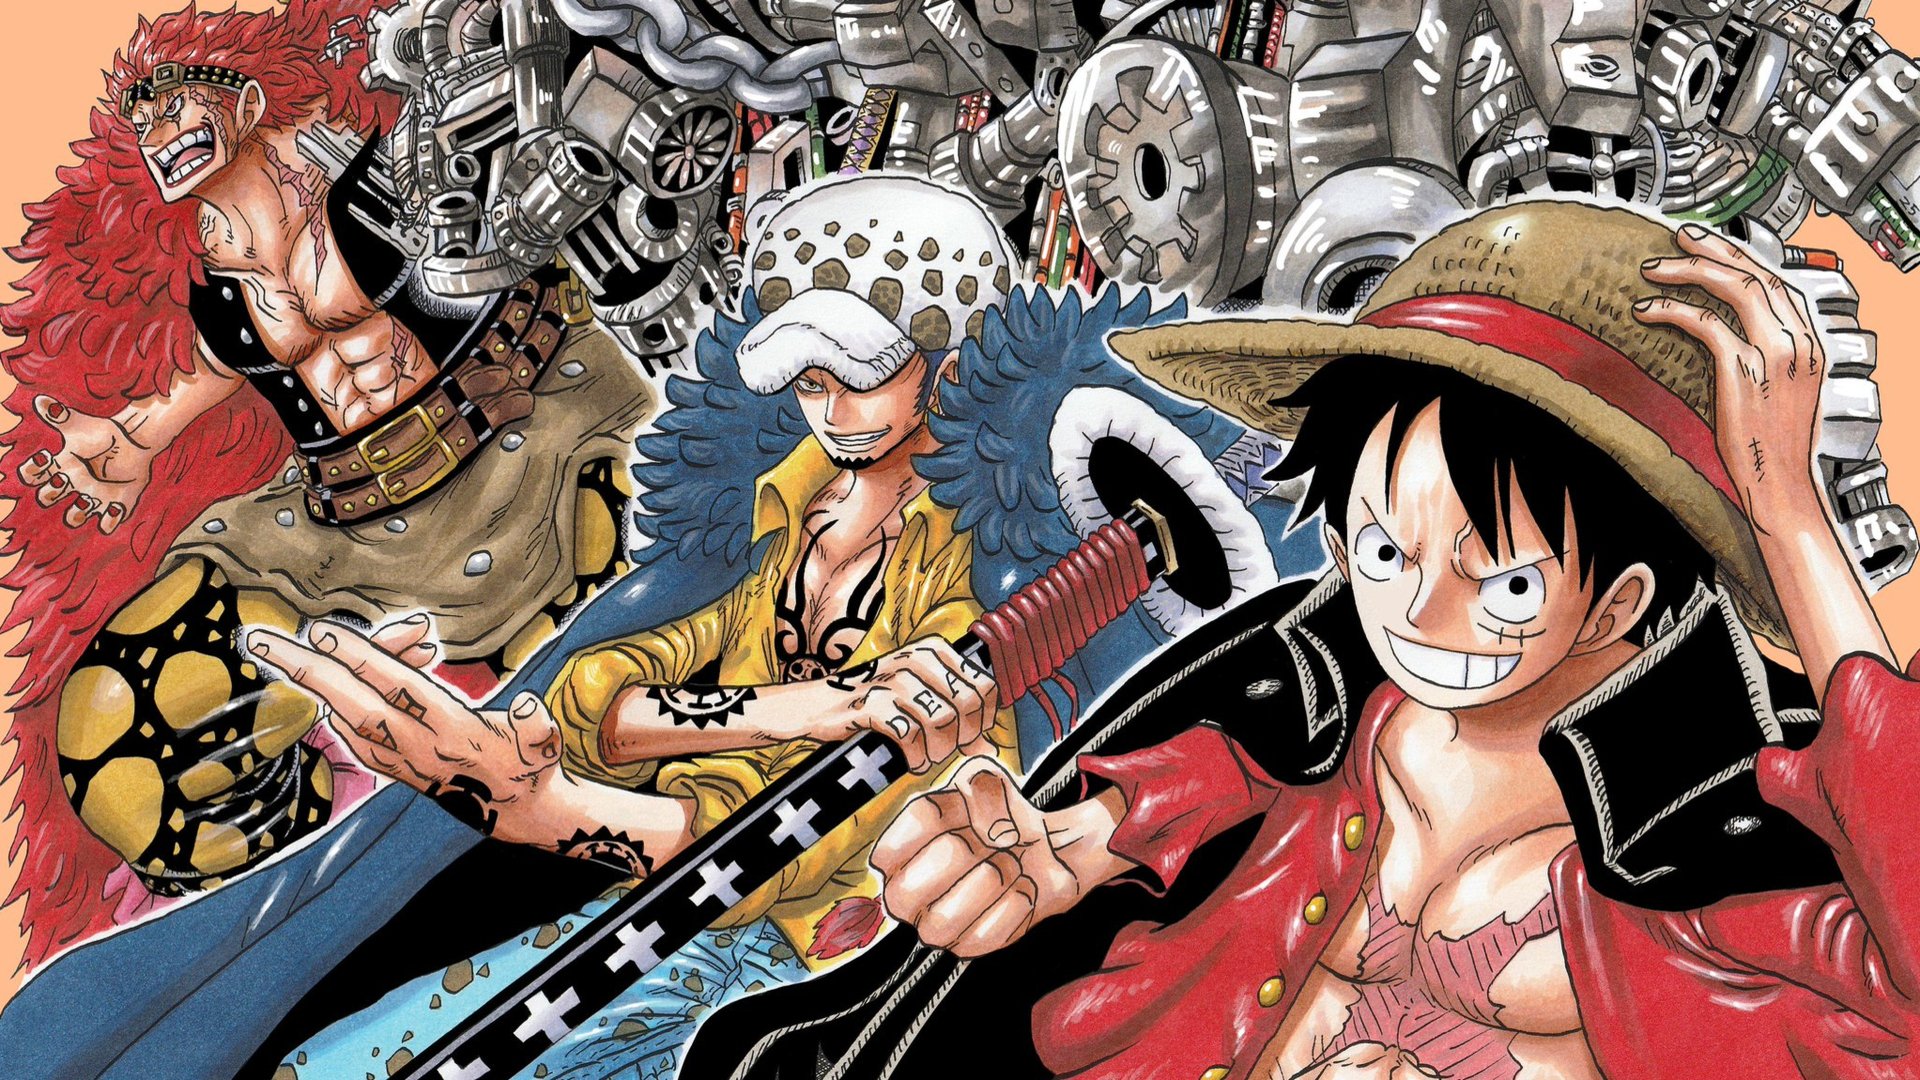 Hâm mộ Luffy và đồng bọn của anh ta trong bộ anime One Piece? Hãy ngắm nhìn nhân vật chính của chúng ta trong một bức ảnh vô cùng đẹp và thể hiện tình yêu và sự tận tụy của nhóm hải tặc Mũ Rơm.